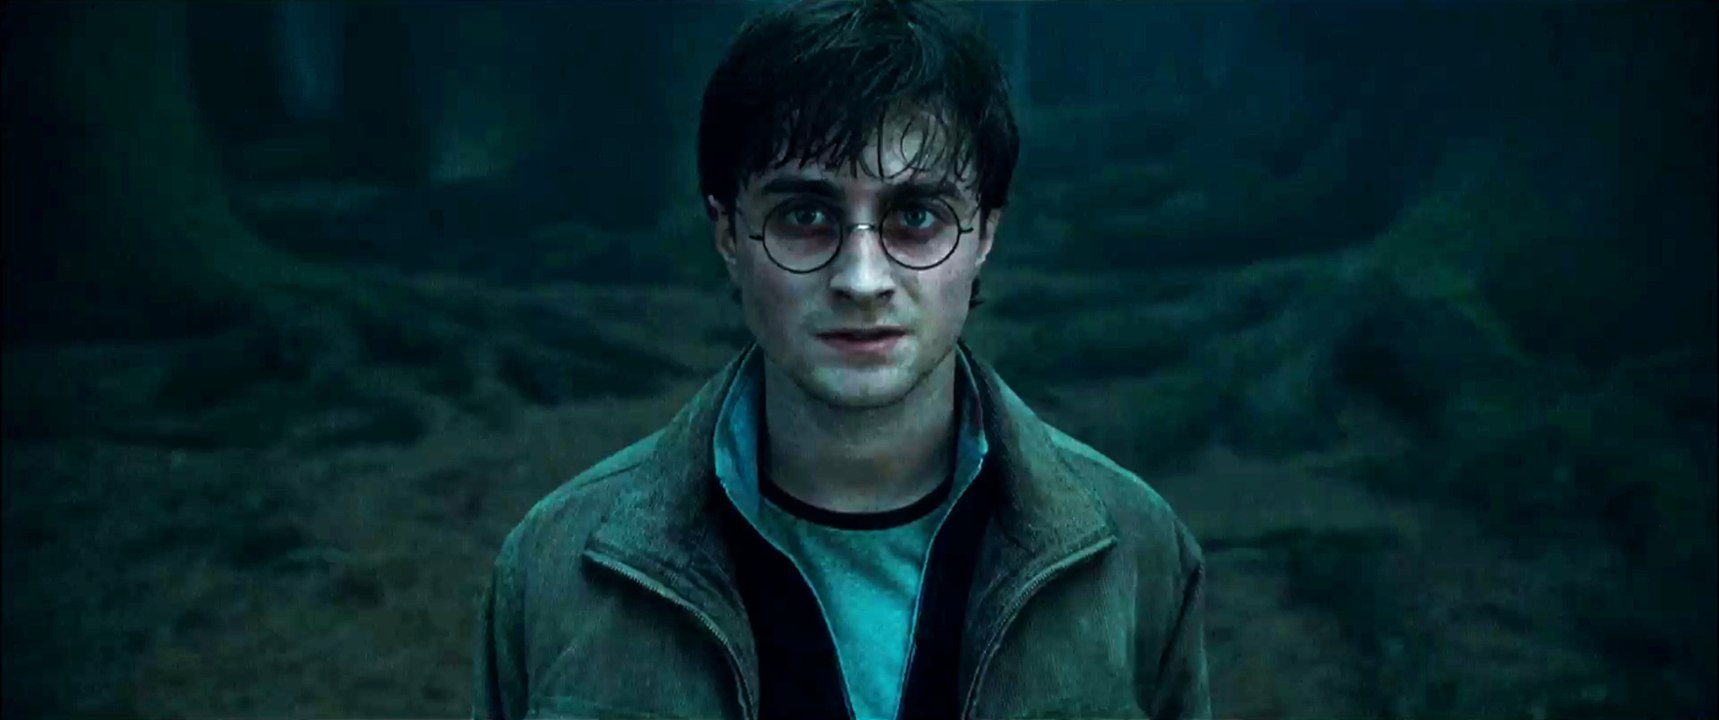 Harry Potter und die Heiligtümer des Todes Teil 1 - Trailer 2 (Deutsch)